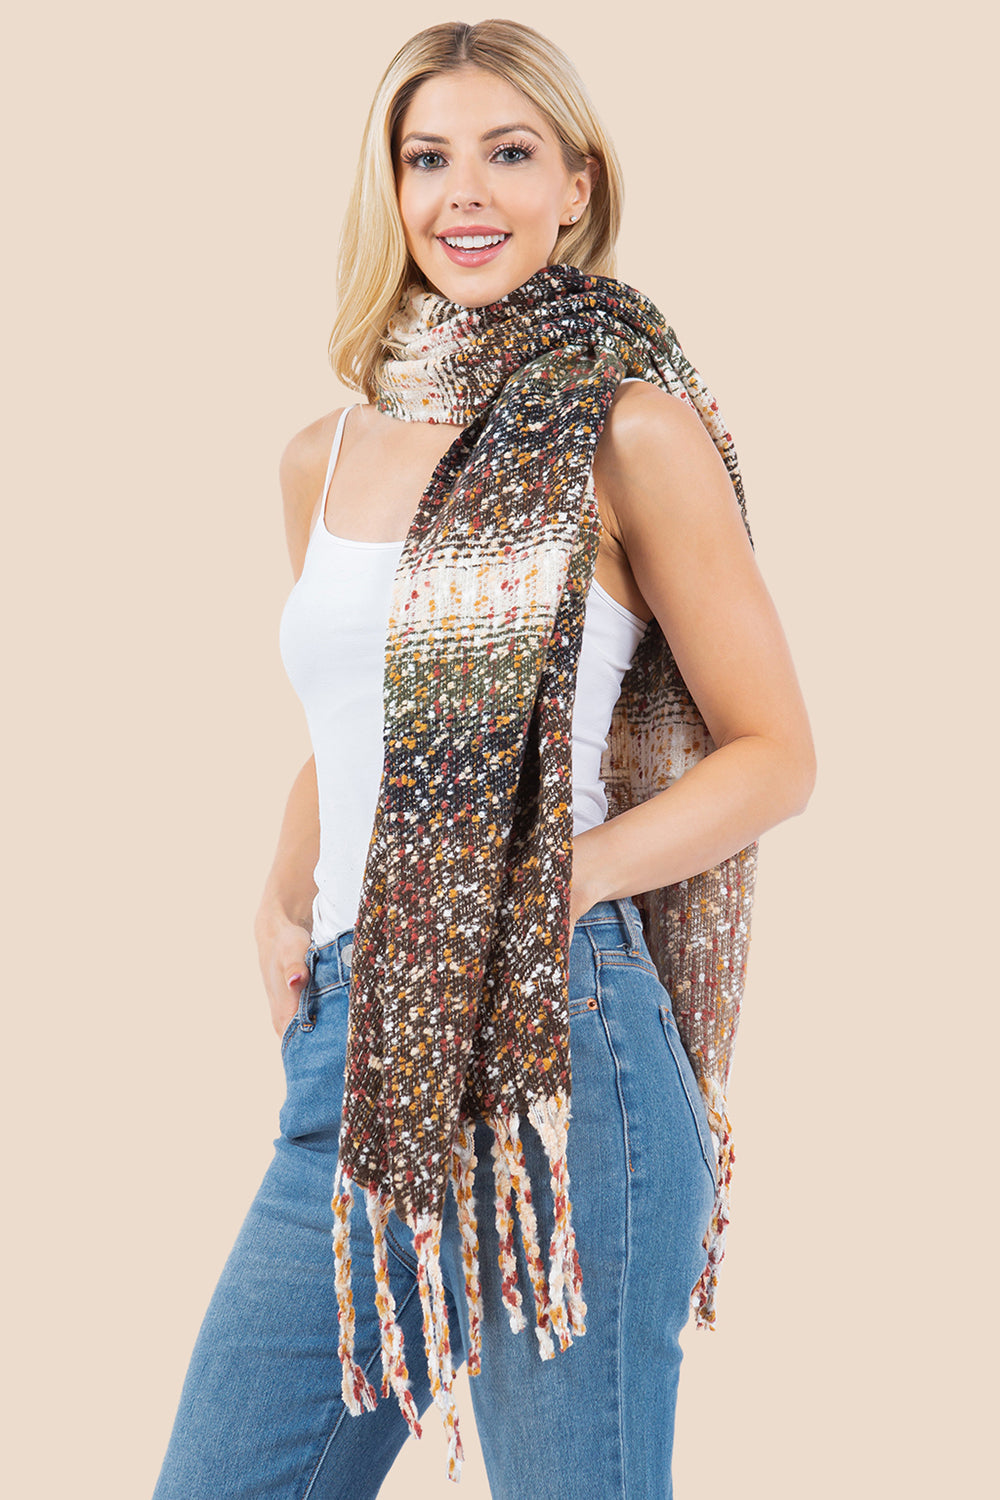 OA-4278 multi color boucle scarf shawl